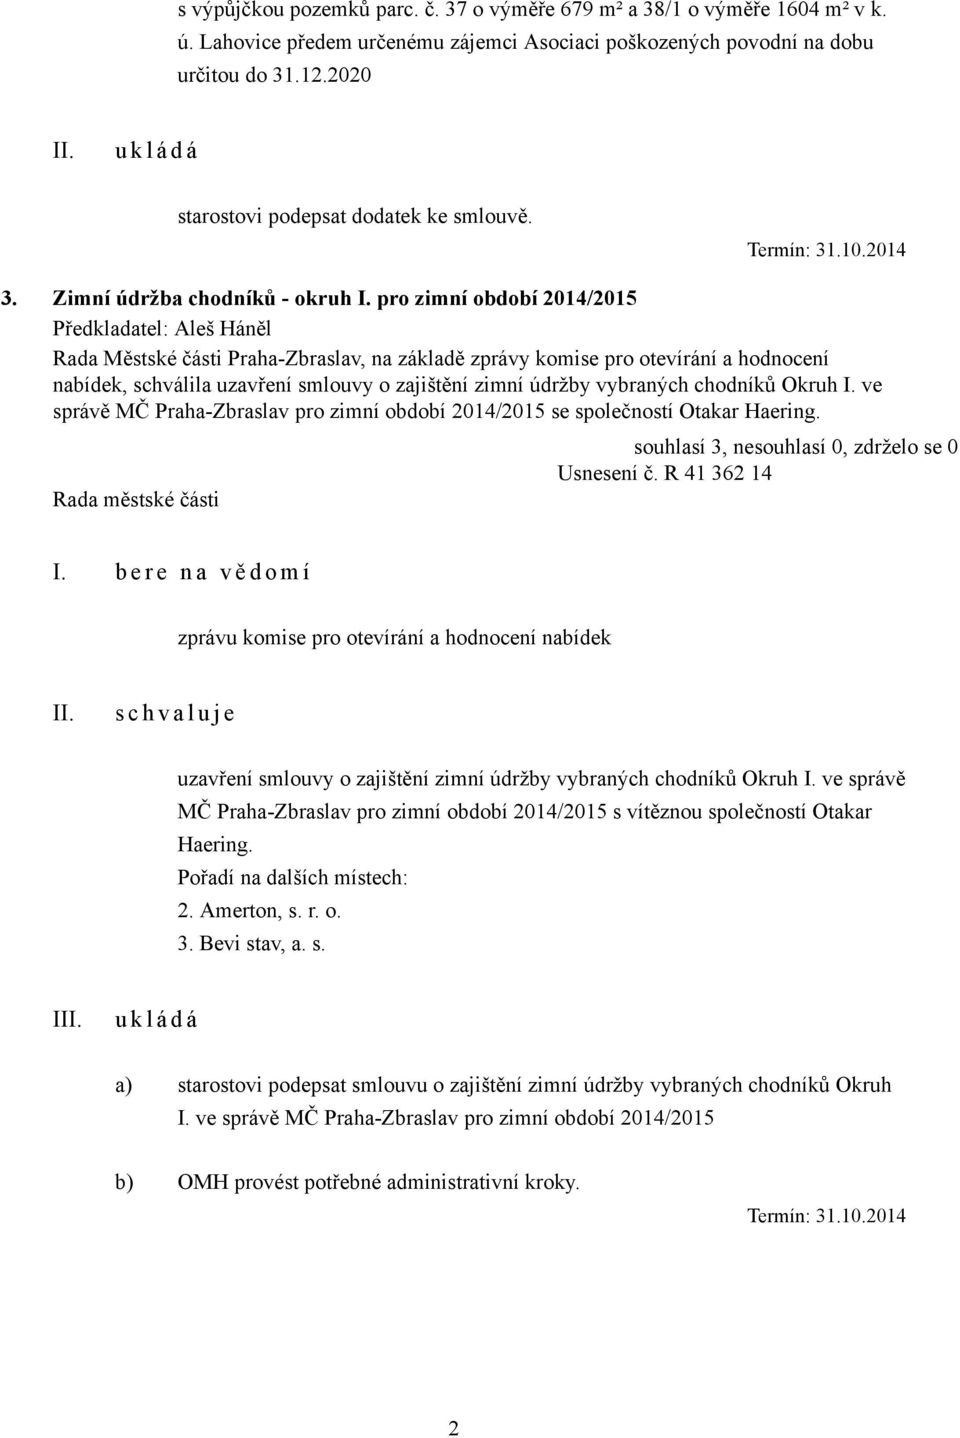 pro zimní období 2014/2015 Rada Městské části Praha-Zbraslav, na základě zprávy komise pro otevírání a hodnocení nabídek, schválila uzavření smlouvy o zajištění zimní údržby vybraných chodníků Okruh